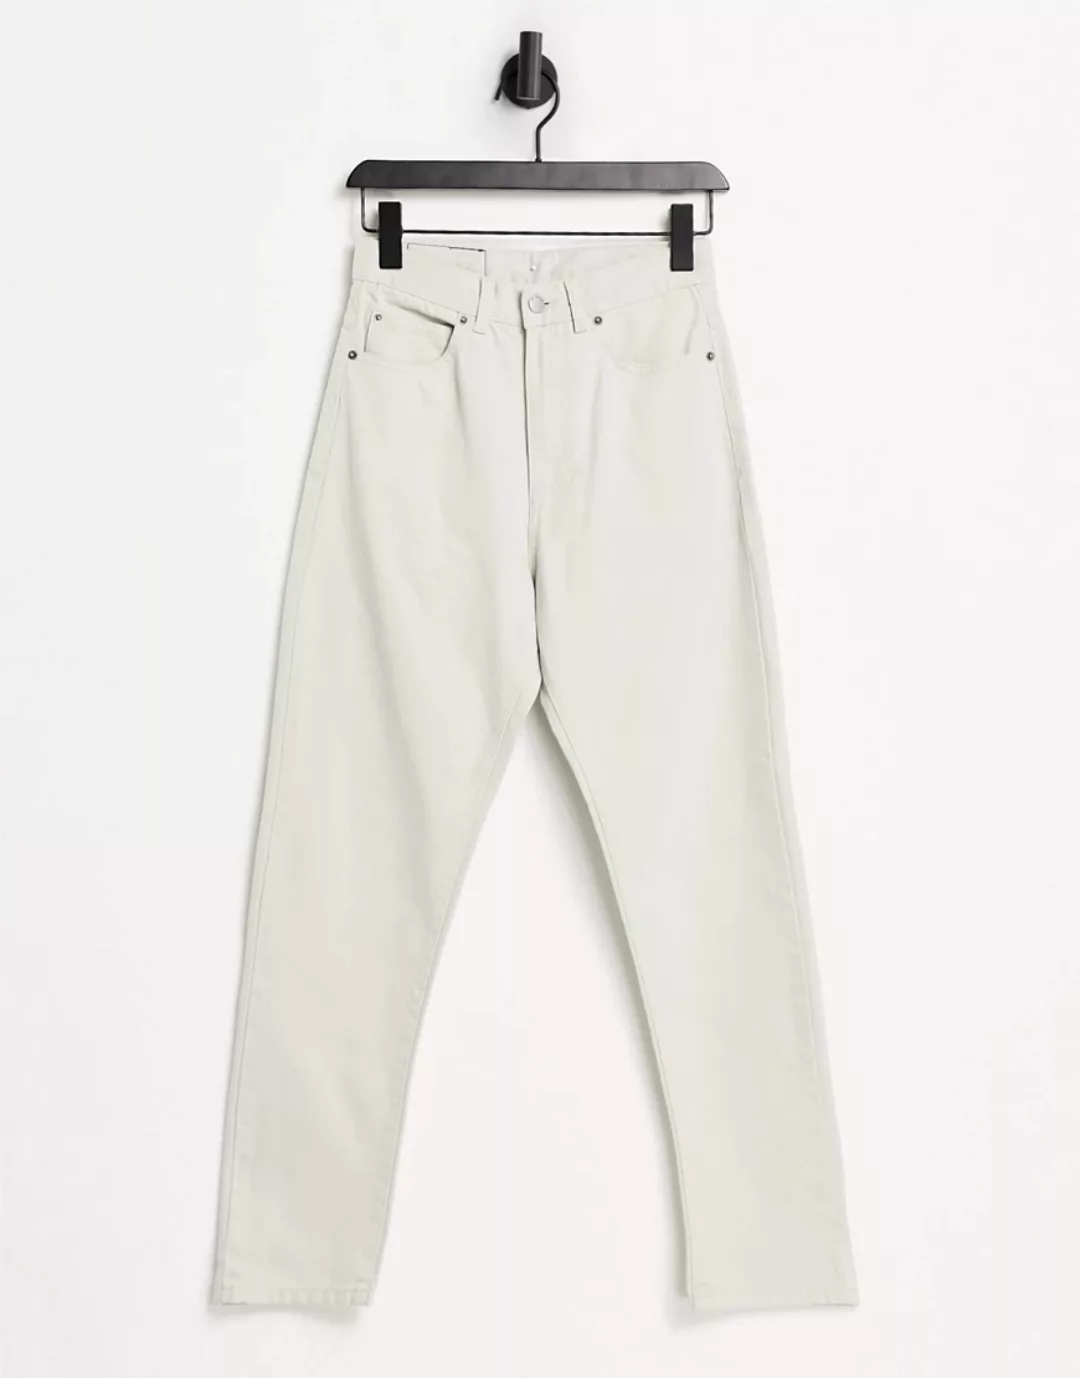 Dr Denim – Shift Workers – Mom-Jeans mit hohem Bund in Stein-Weiß günstig online kaufen